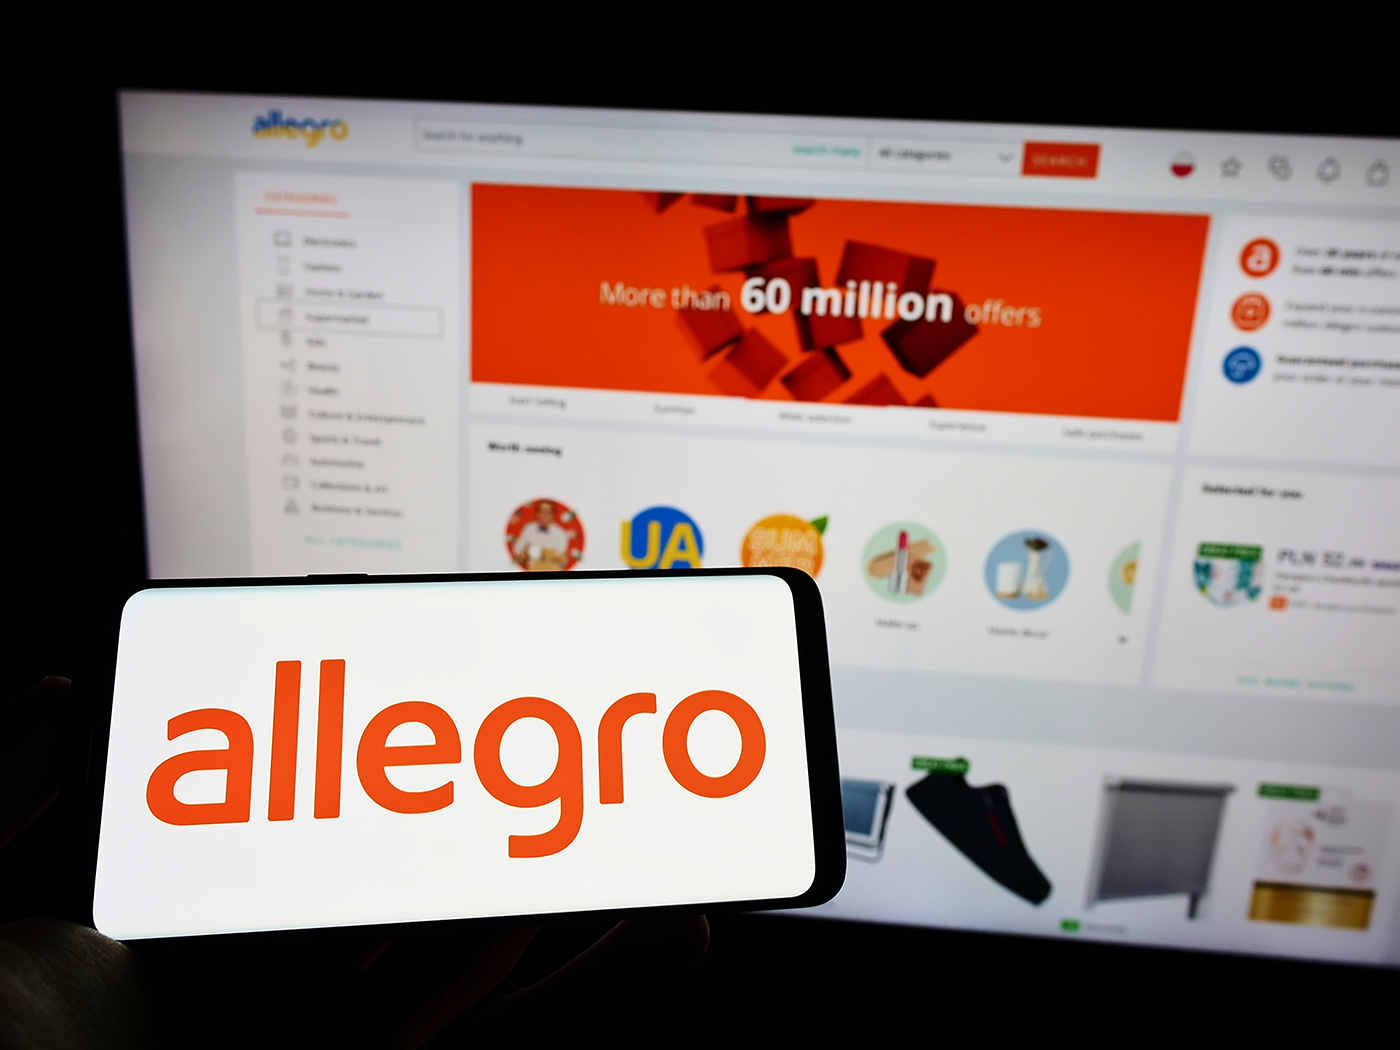 Allegro usunie oferty spoza katalogu - to duża zmiana w formule biznesowej kolosa